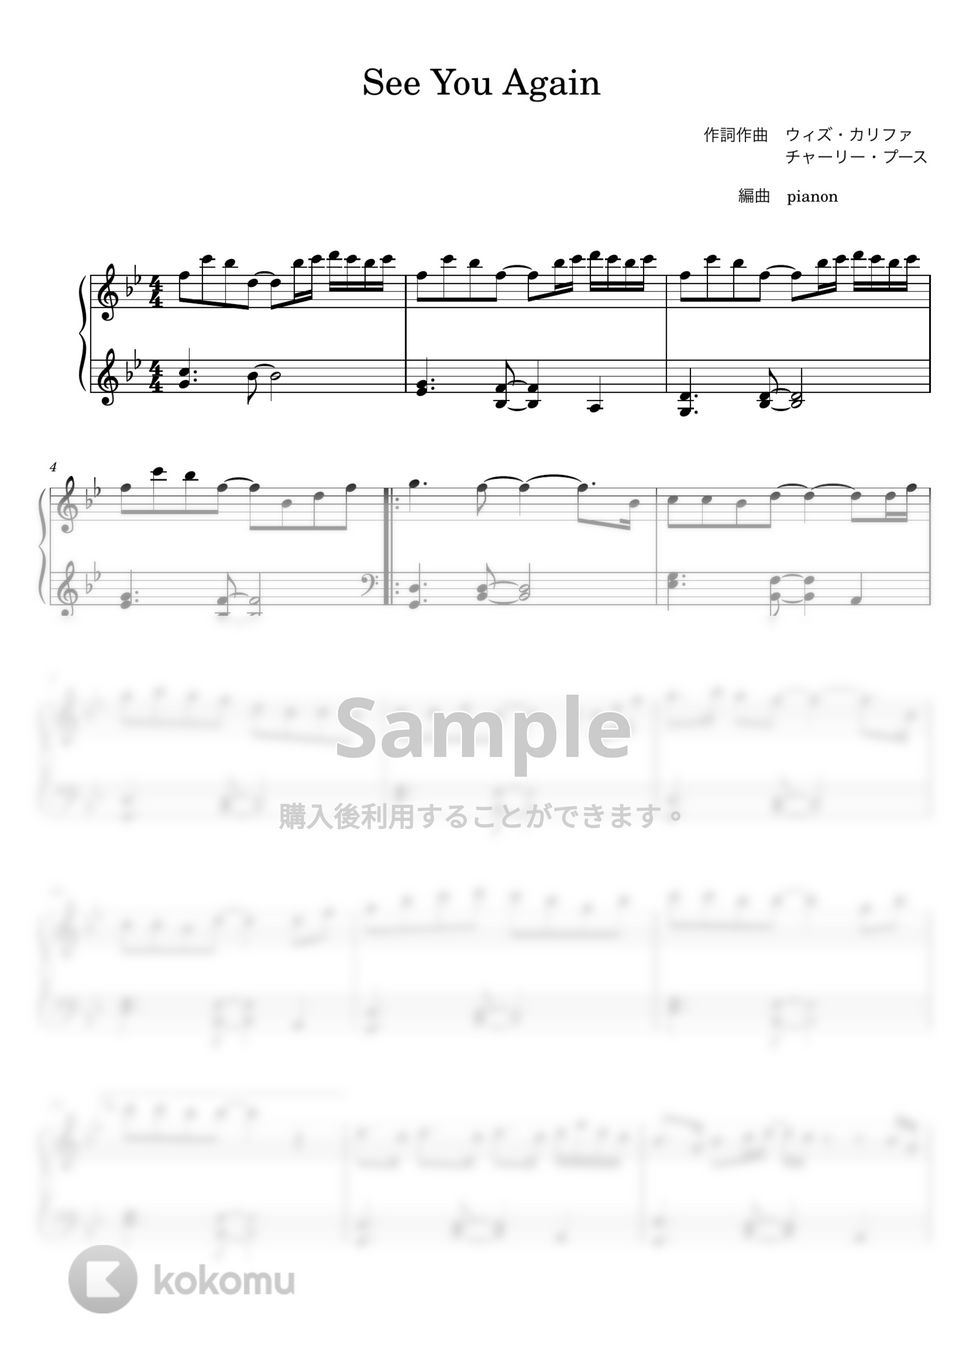 ウィズ・カリファ - See You Again (ピアノ初中級ソロ) by pianon